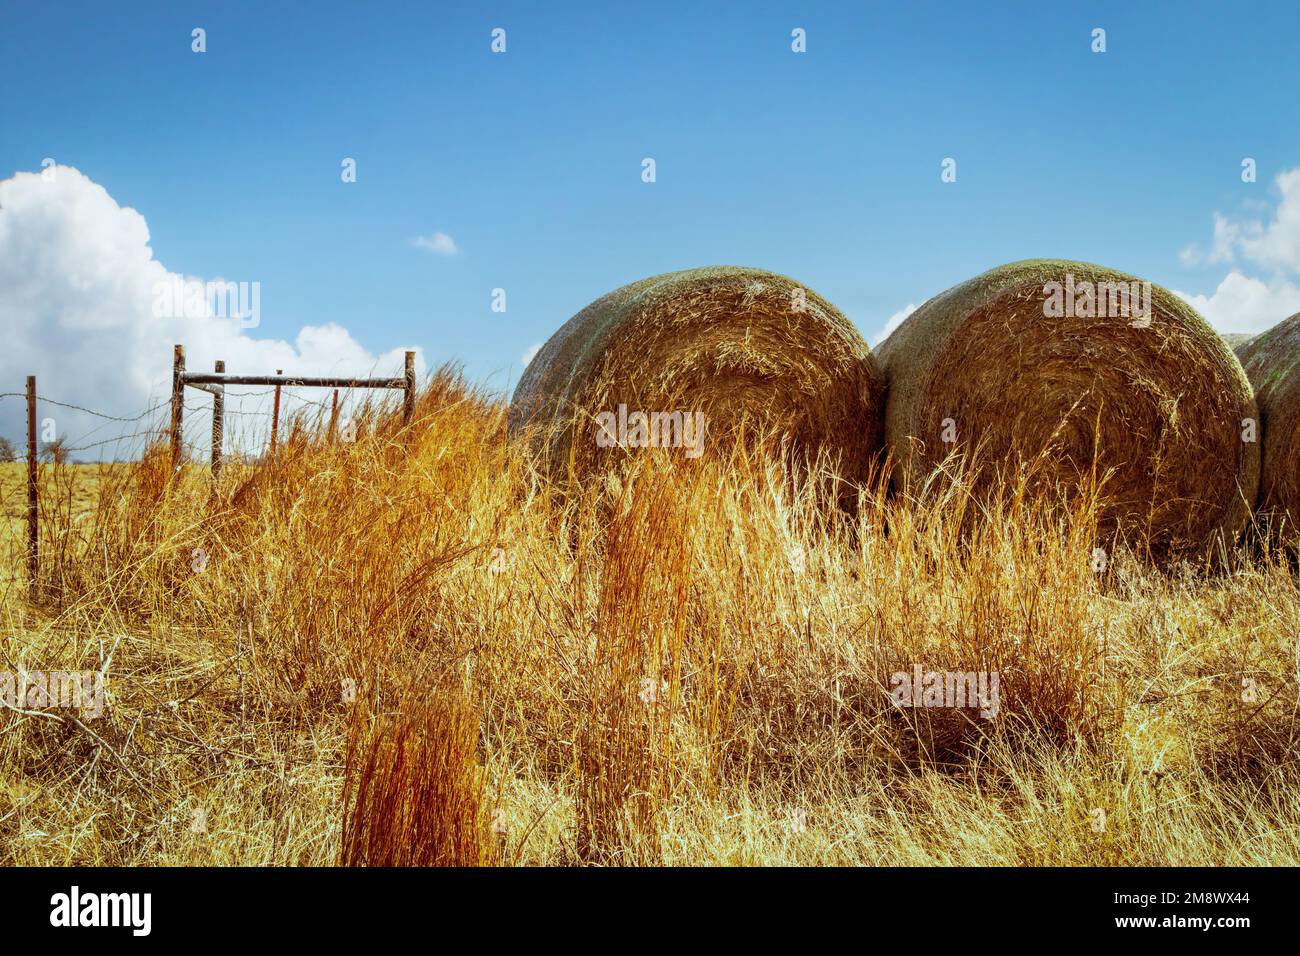 Grandi balle rotonde di fieno seduti in un angolo di hayfield con vecchia recinzione di filo rinforzato in un angolo da legno - stanza per la copia Foto Stock